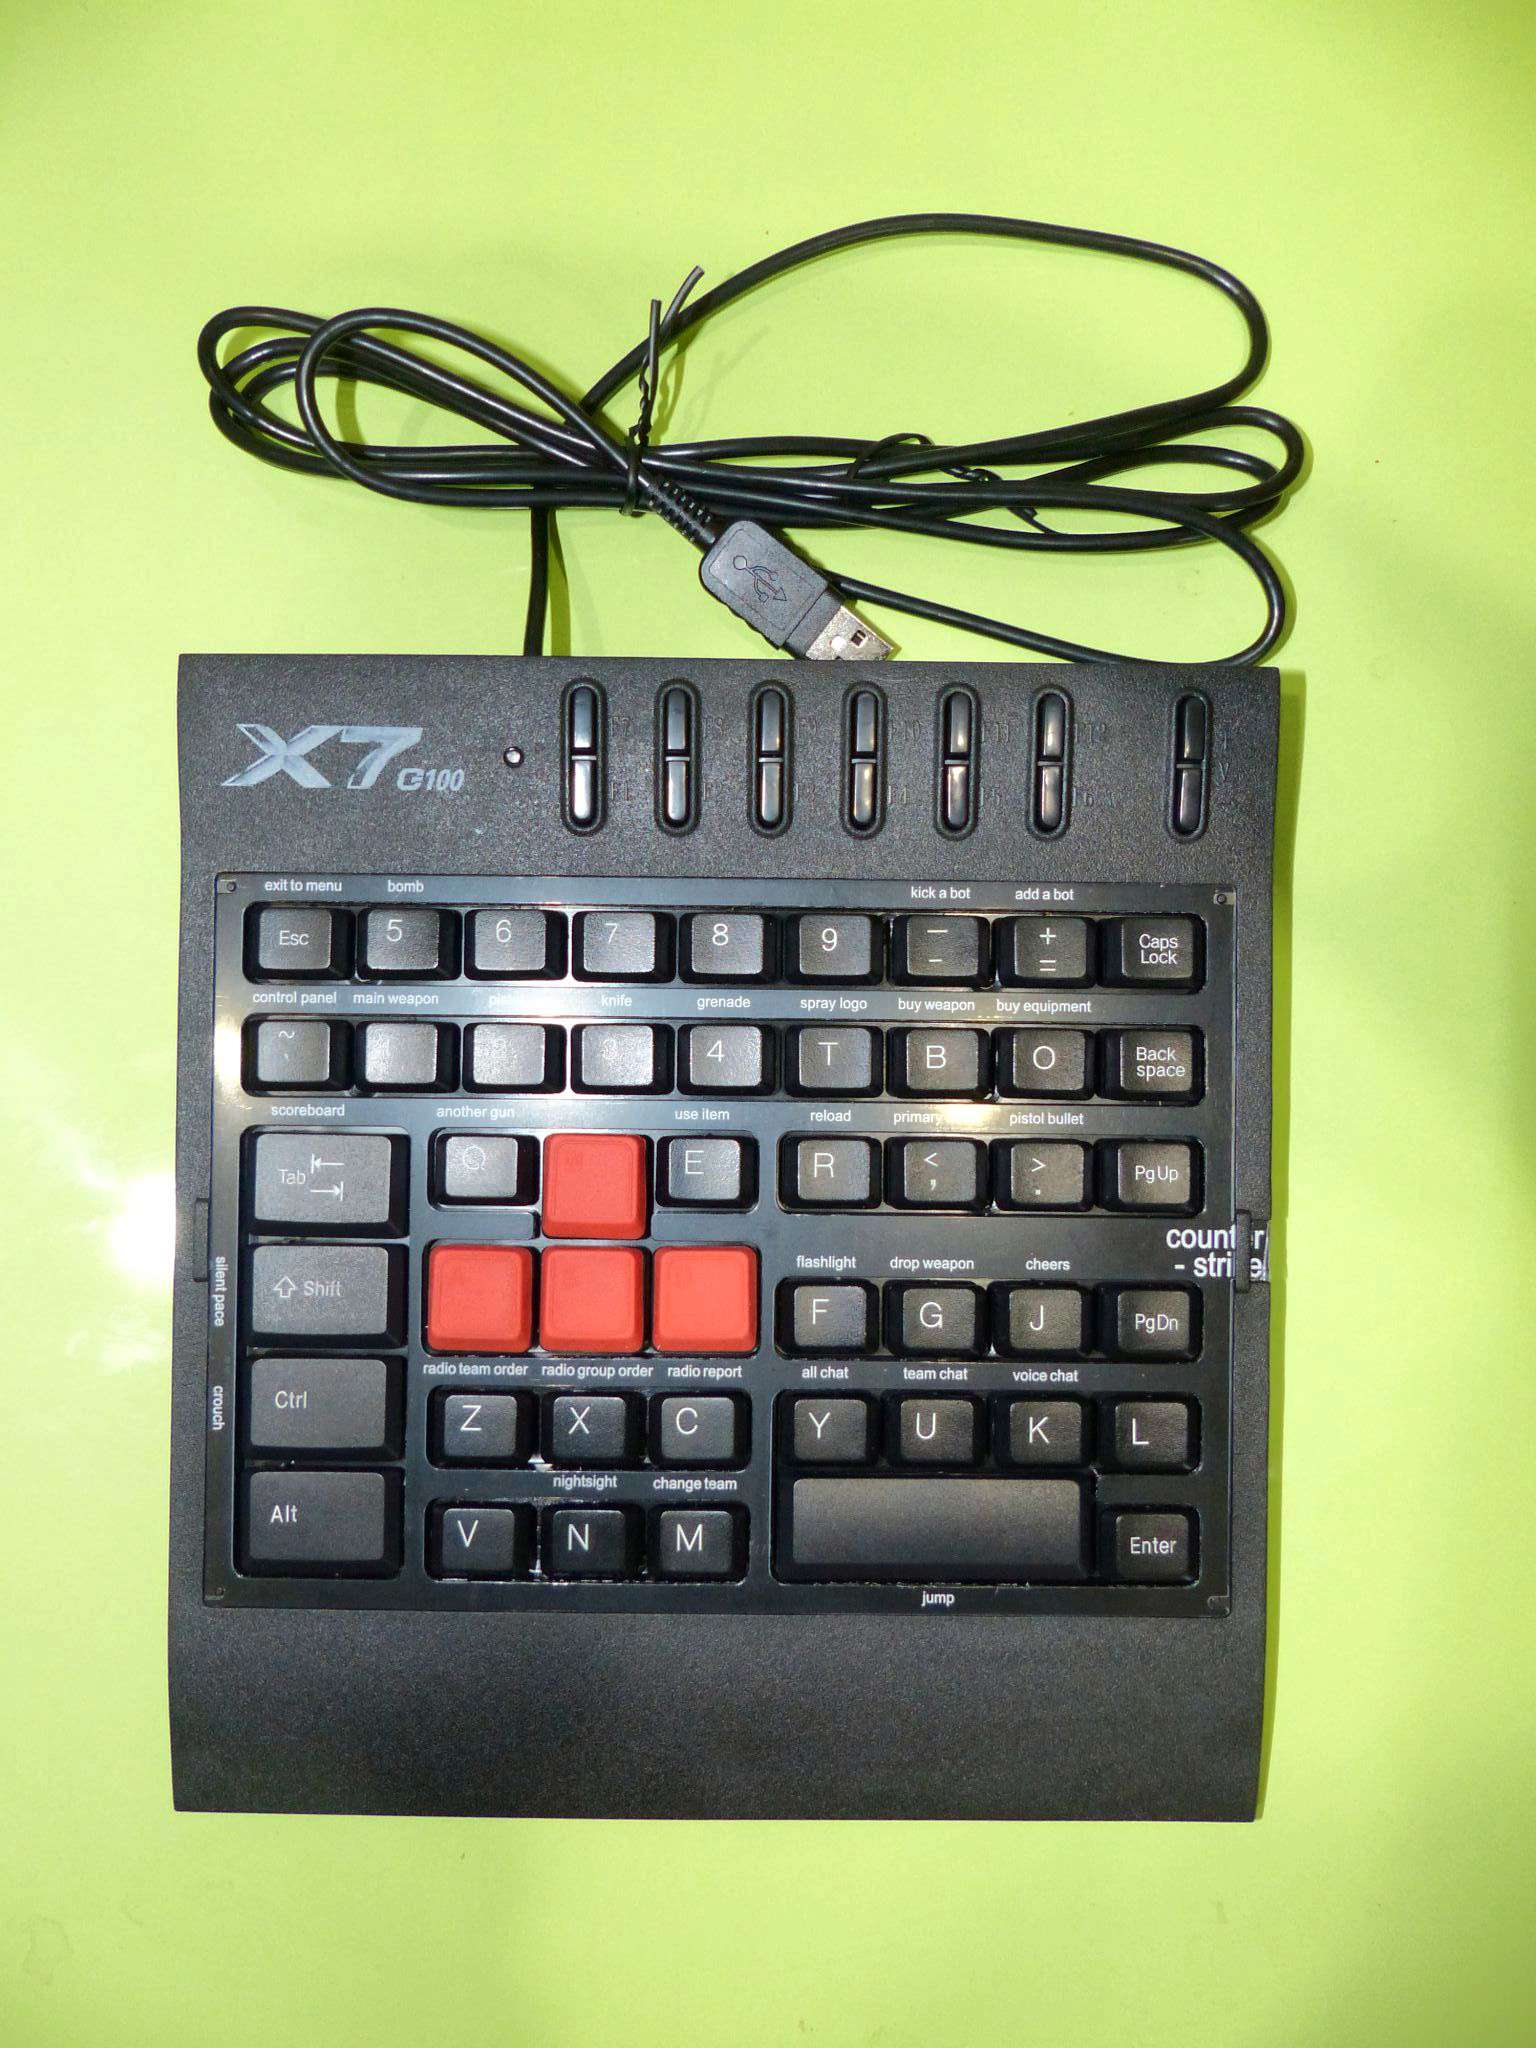 A4tech x7-g100